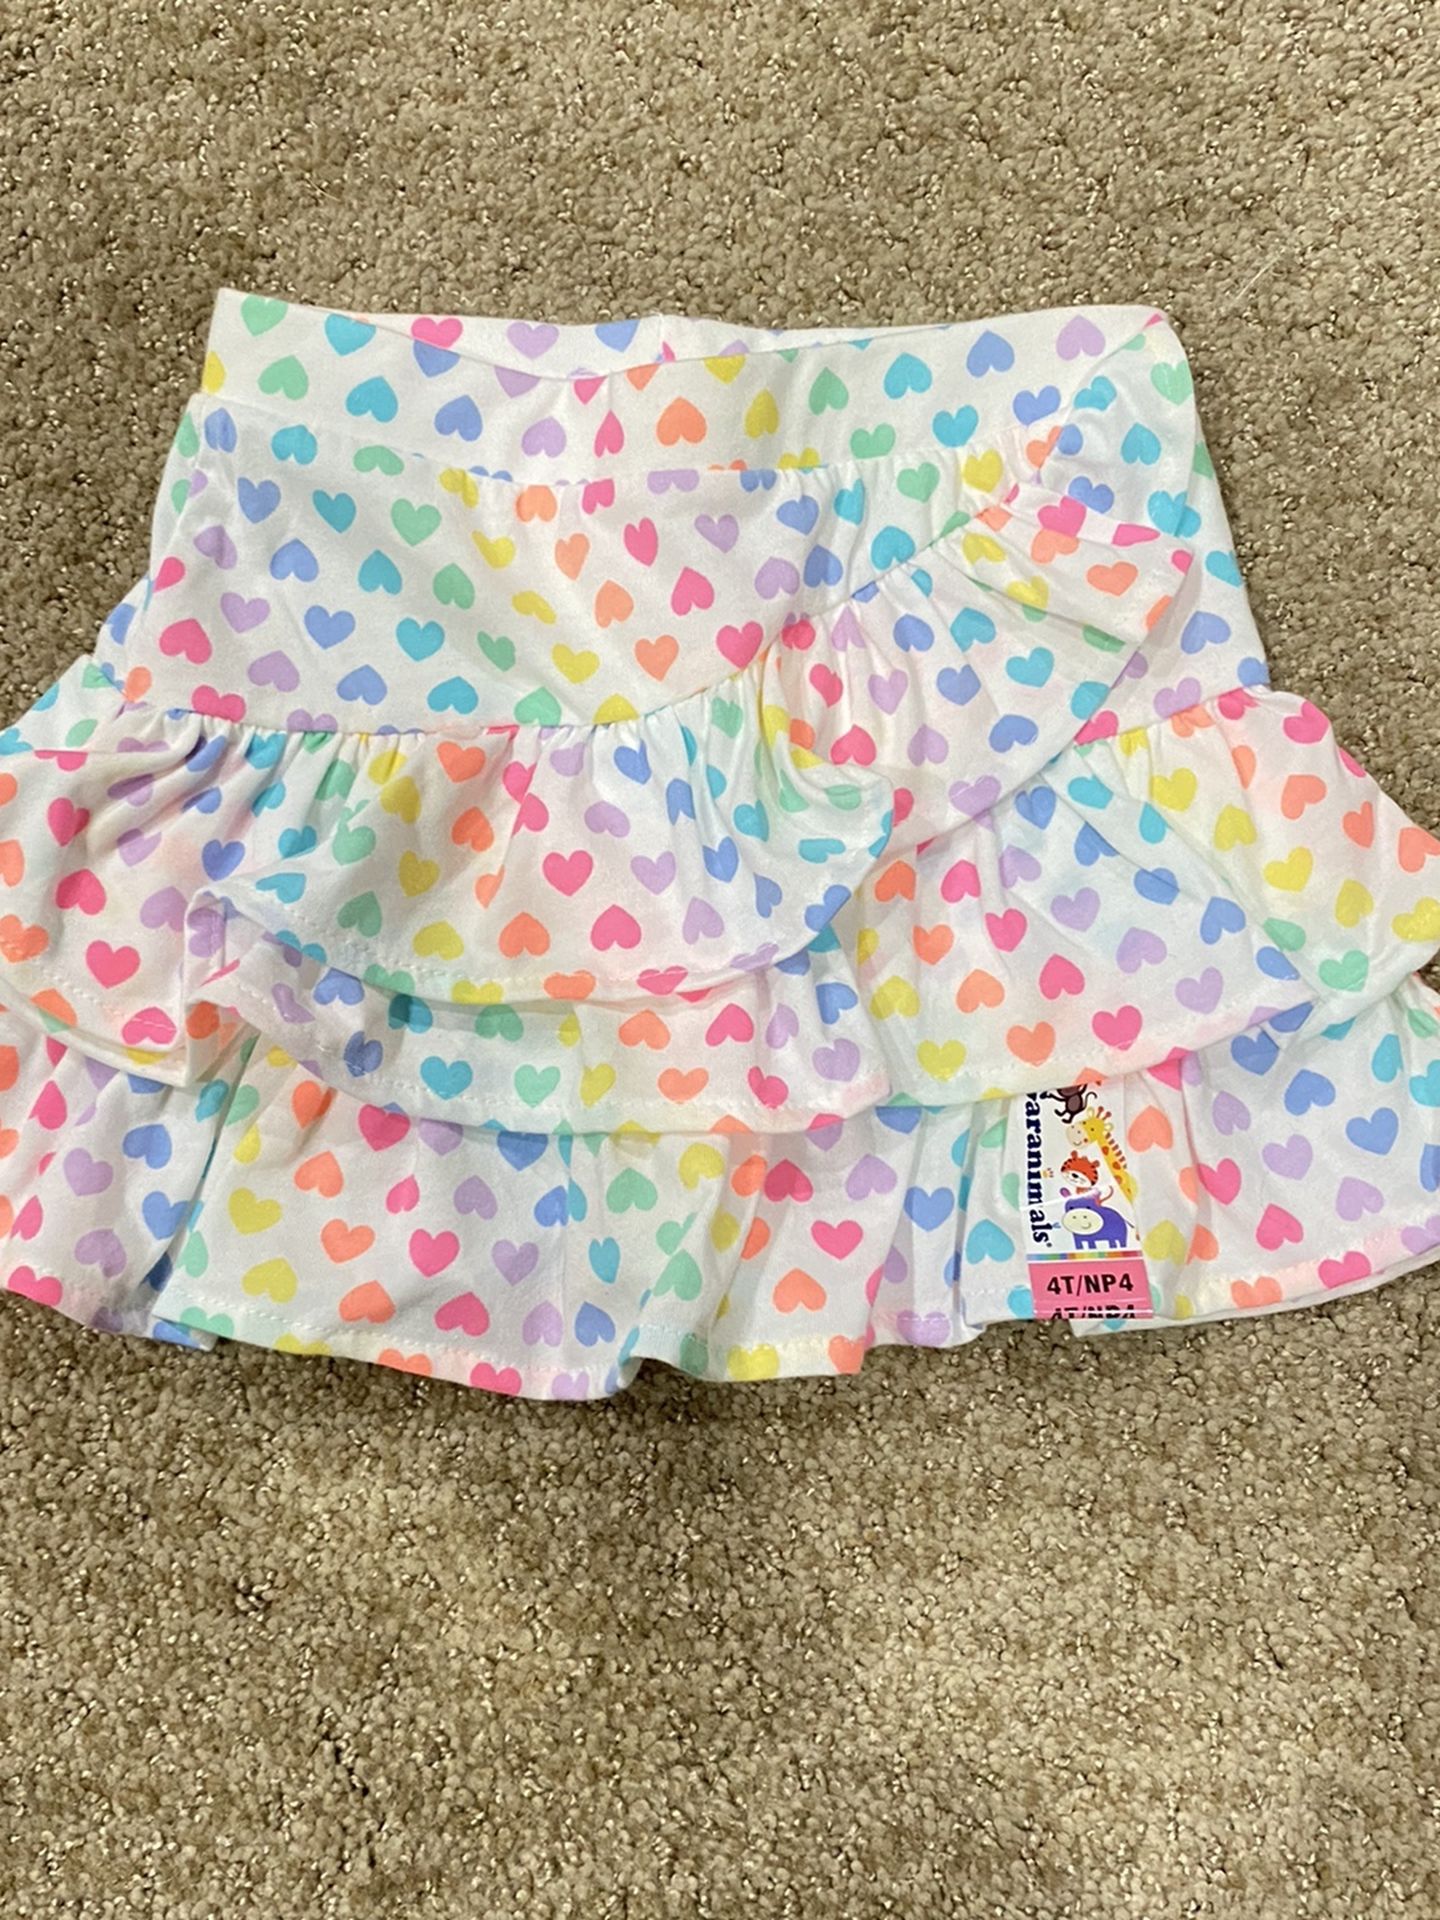 Girls Size 4t Skirt New